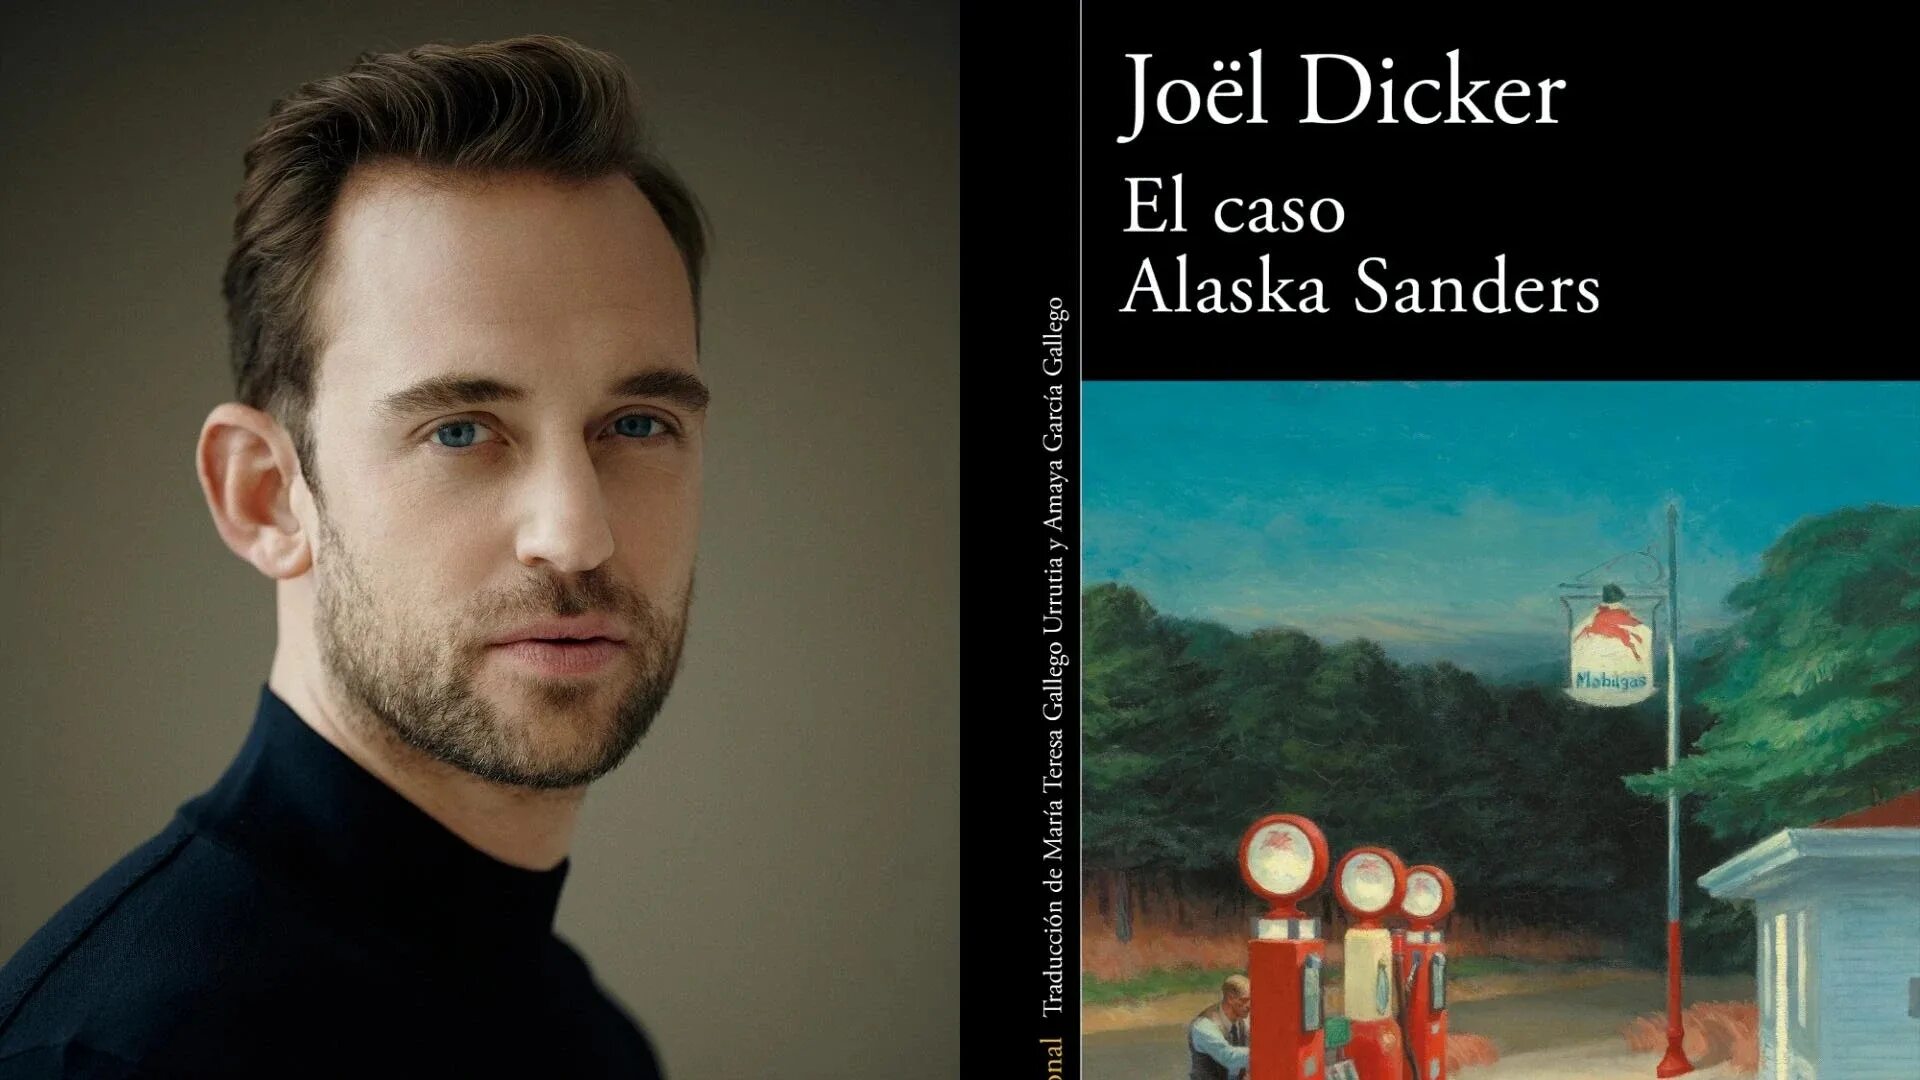 Жоэль диккер дело аляска. Жоэль Диккер. Аляска Сандерса. Дело Аляски Сандерс. “The Case of Alaska Sanders” by Joël dicker Cover.